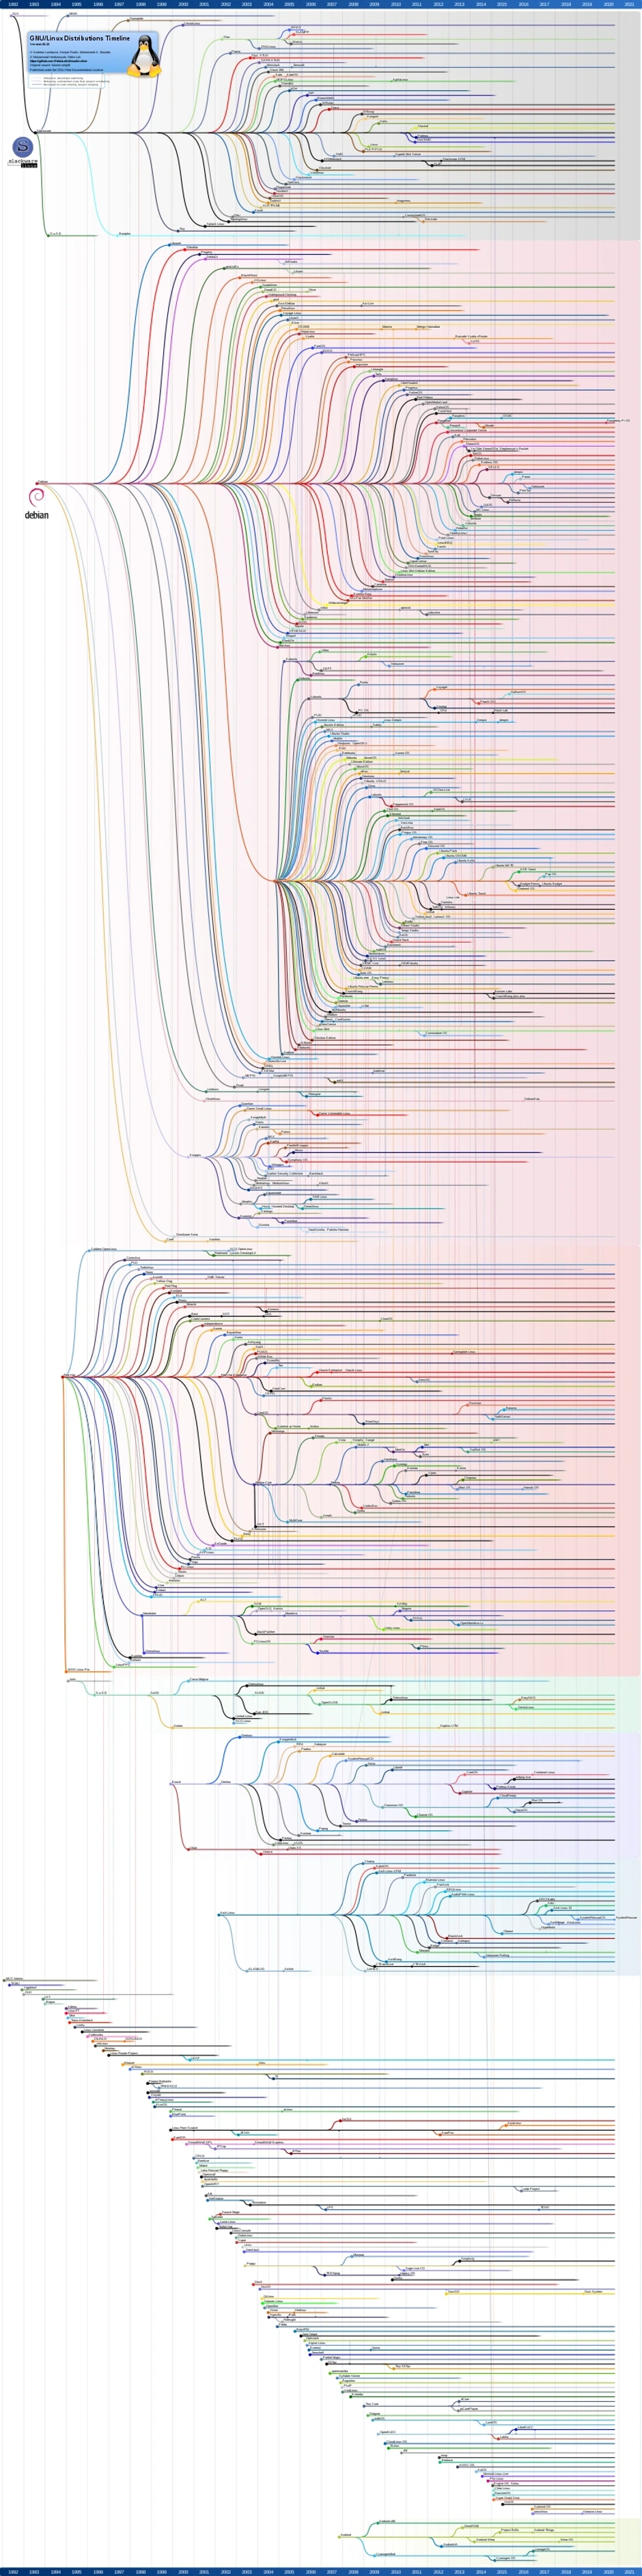 Linux distribution timeline